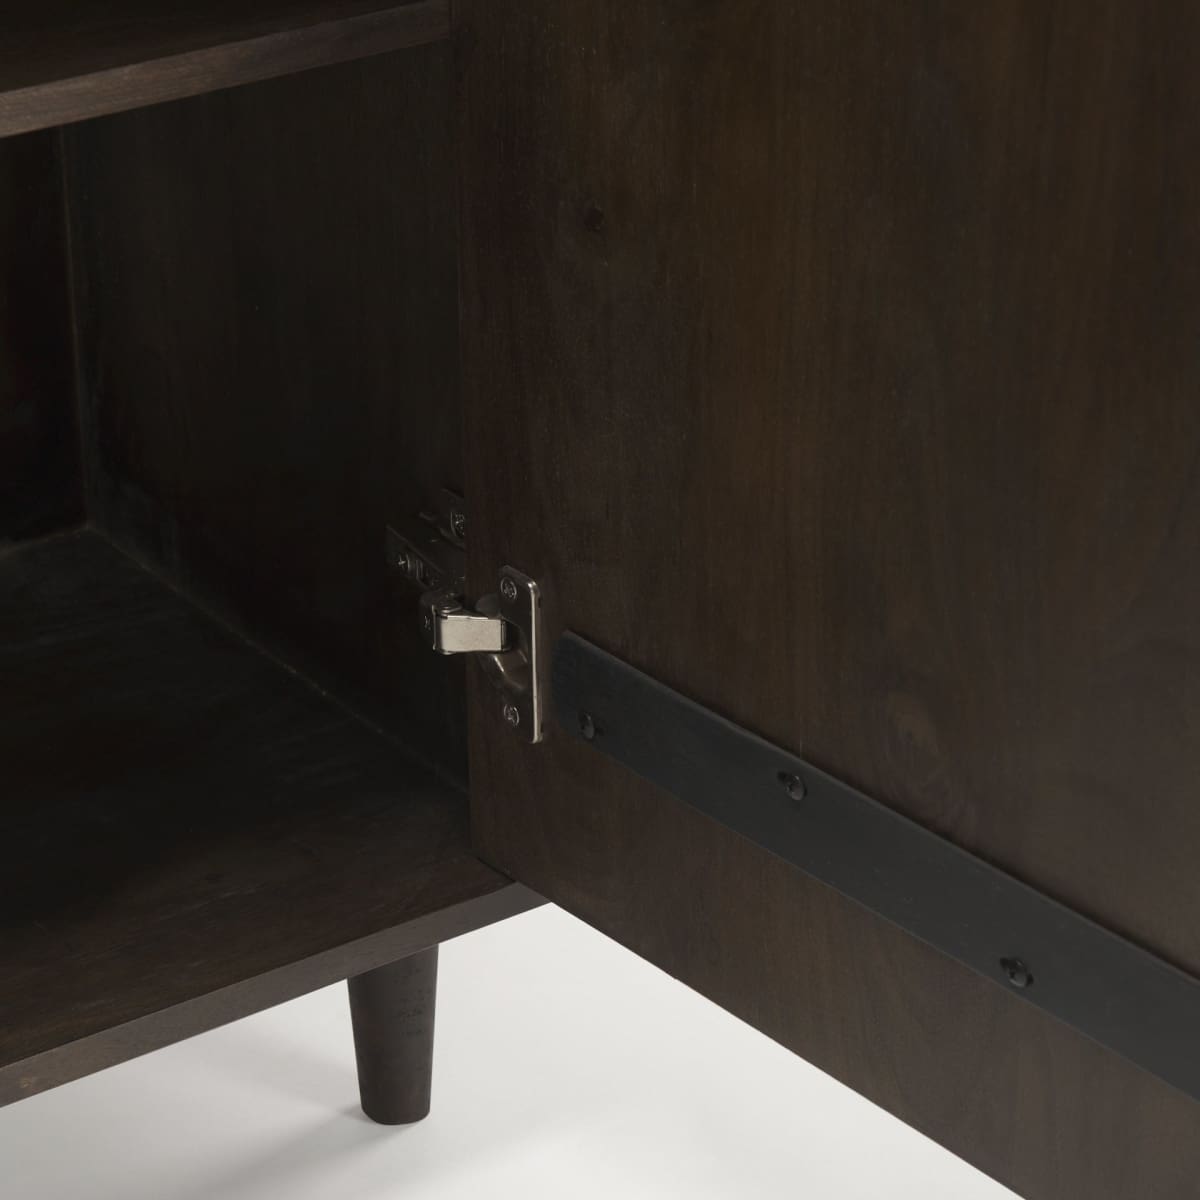 Tucker Accent Cabinet Dark Brown Wood | 2 Door - acc-chest-cabinets